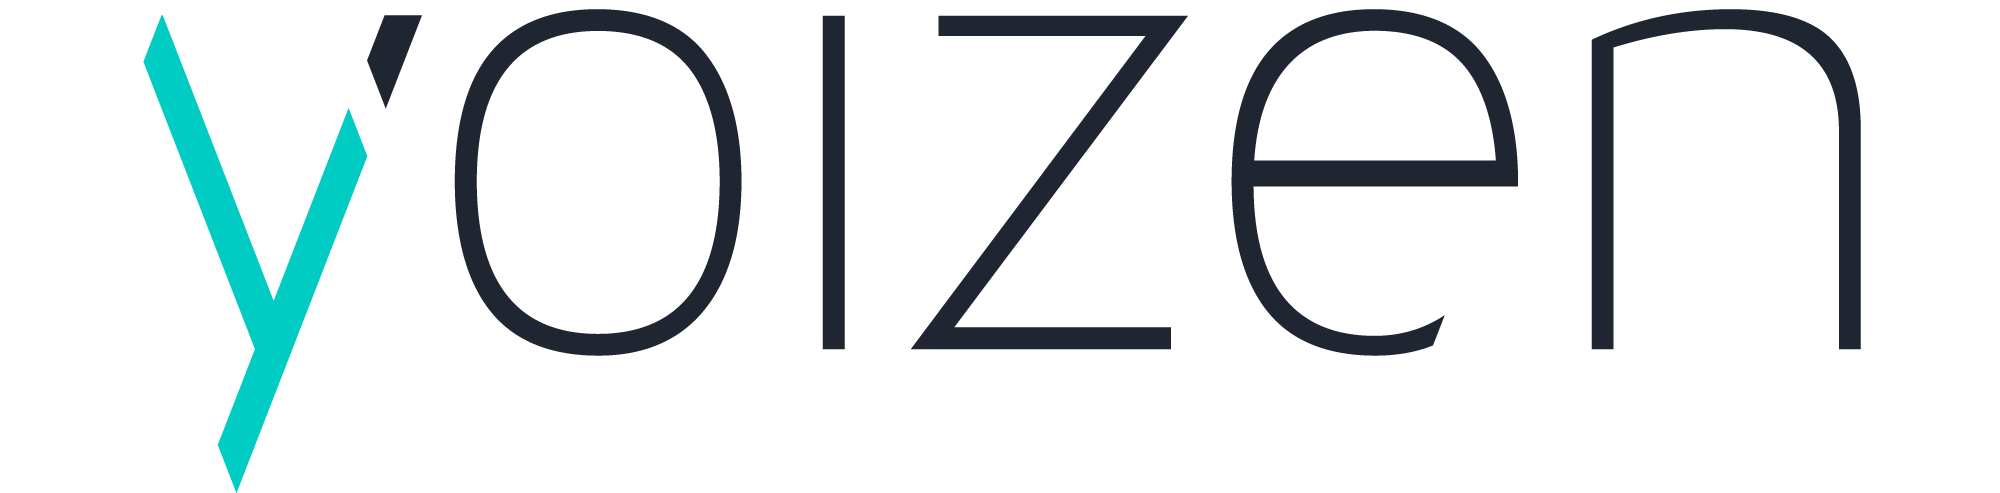 Logo Yoizen